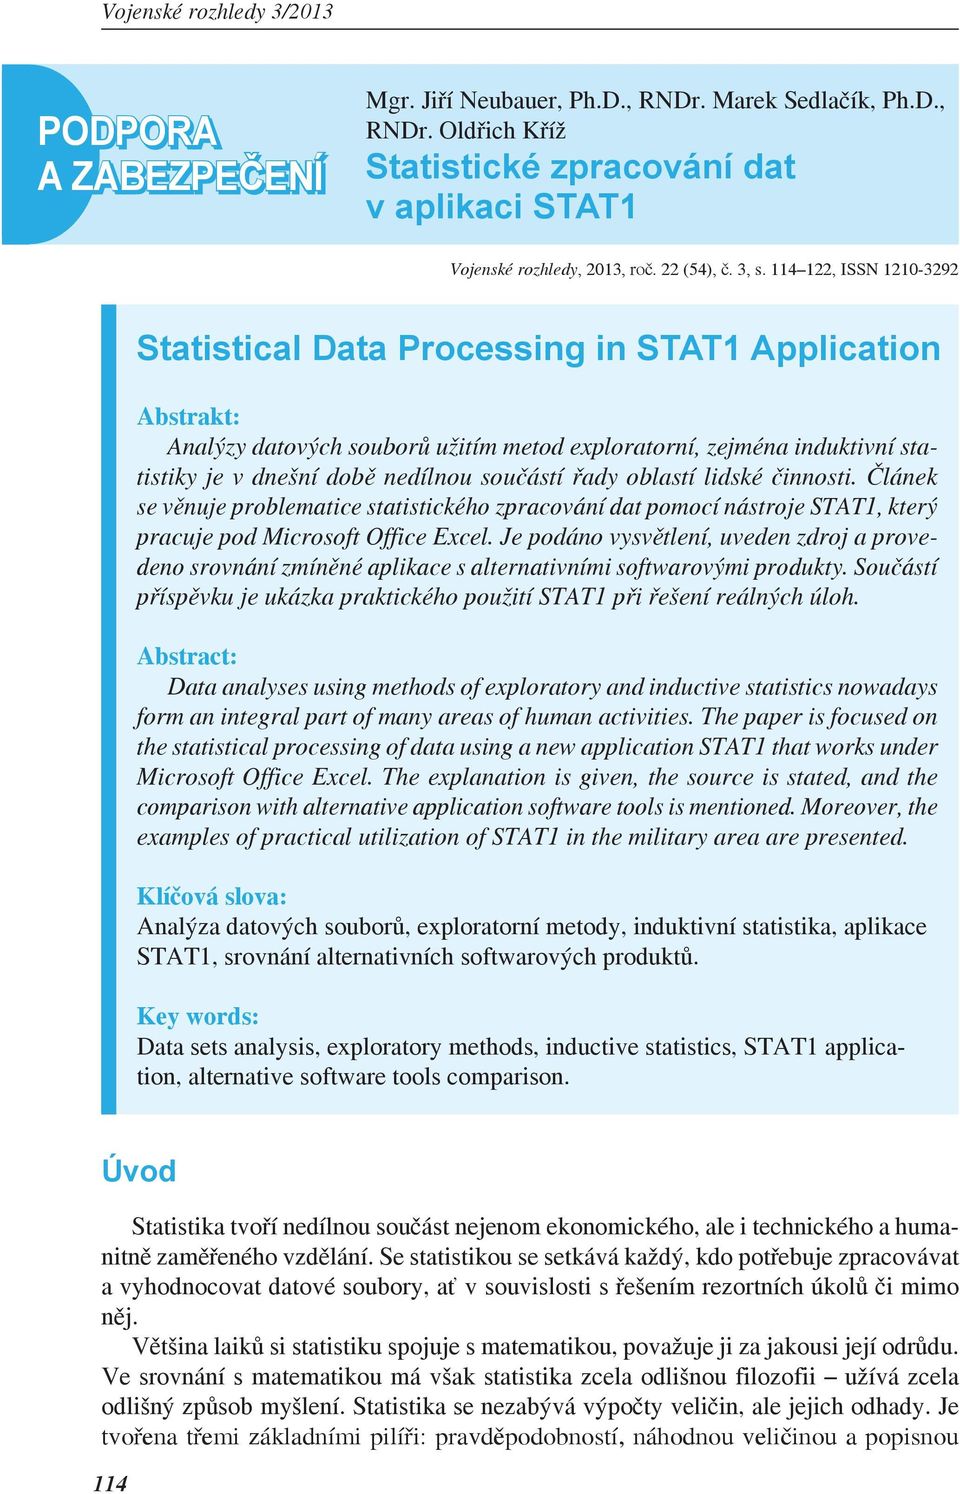 ady oblastí lidské innosti. lánek se v nuje problematice statistického zpracování dat pomocí nástroje STAT1, který pracuje pod Microsoft Office Excel.